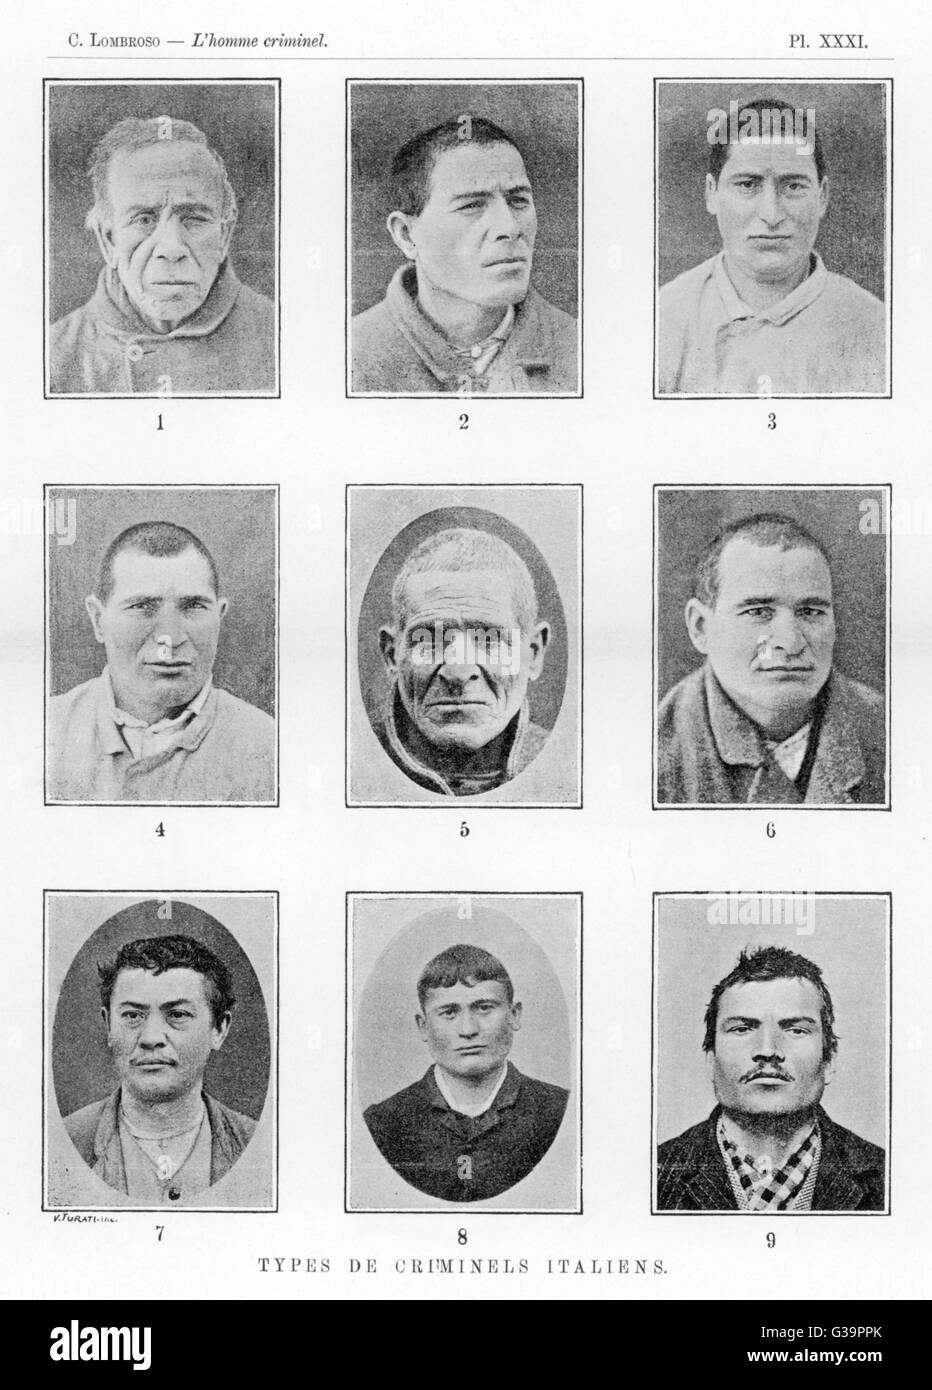 Portraits de criminels italiens. Lombroso a affirmé que la nature criminelle a été révélé en physionomie. Date : 1895 Banque D'Images